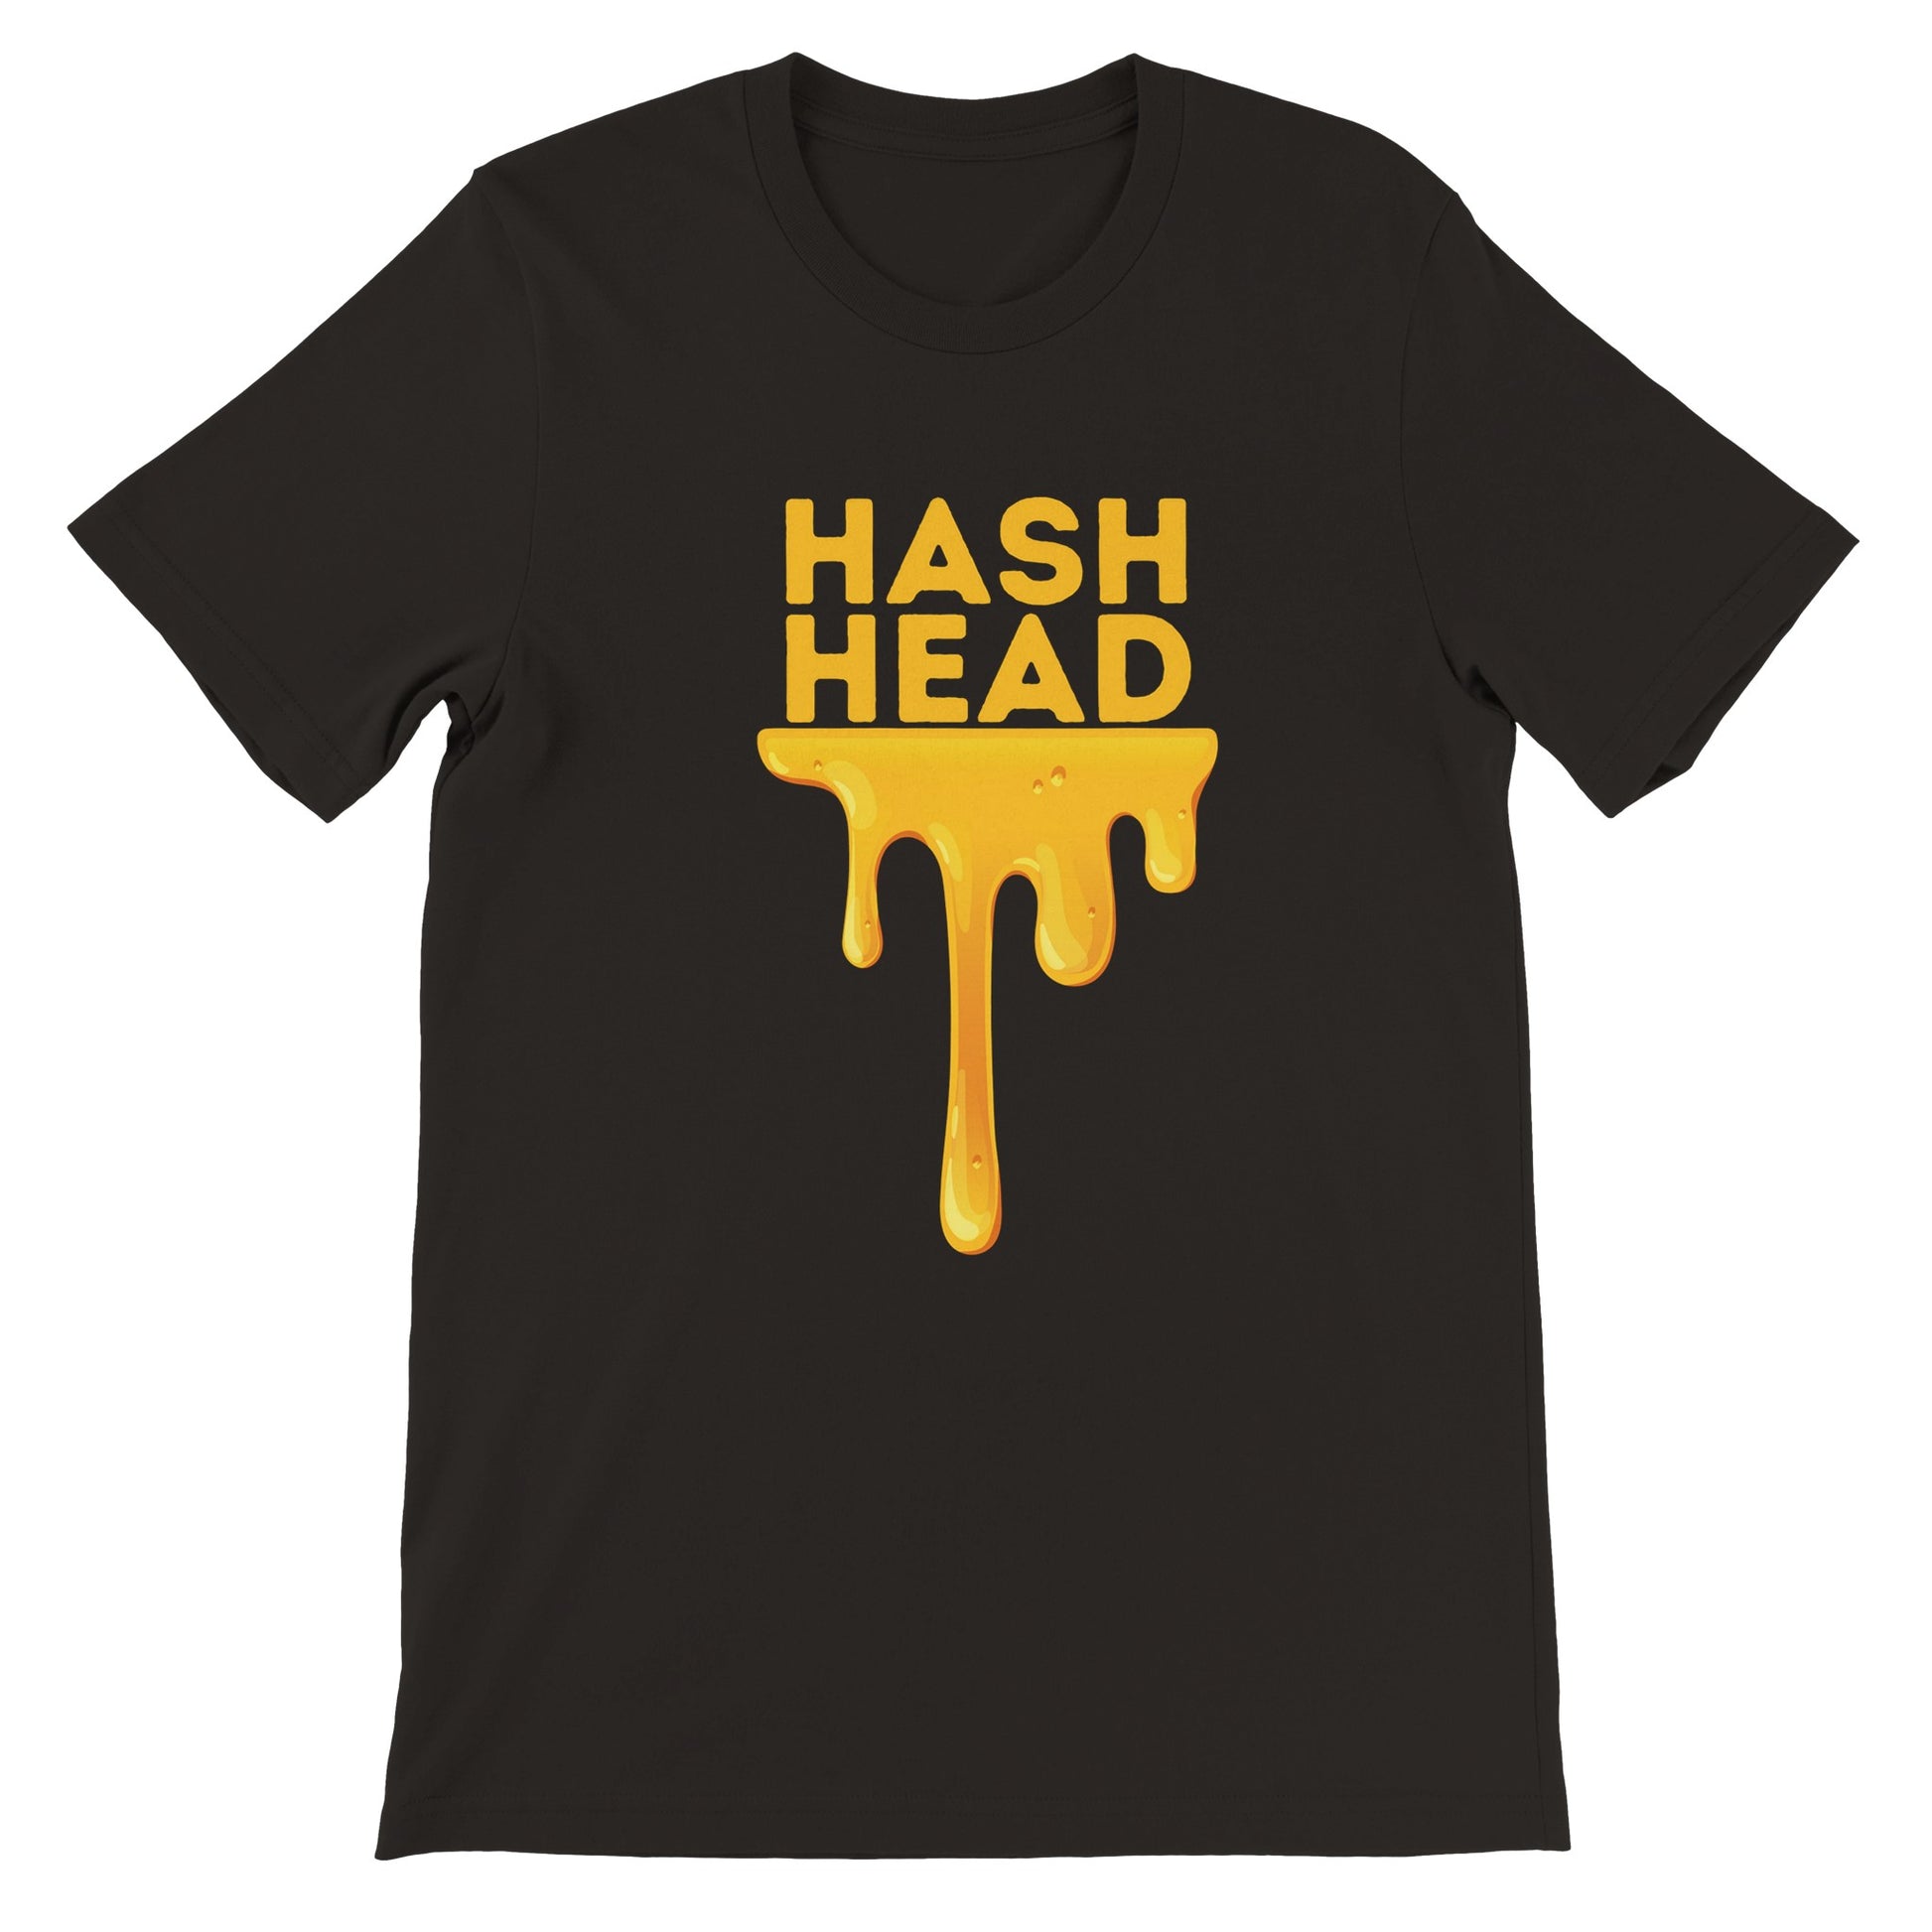 HASH HEAD T-shirt dankweedtees